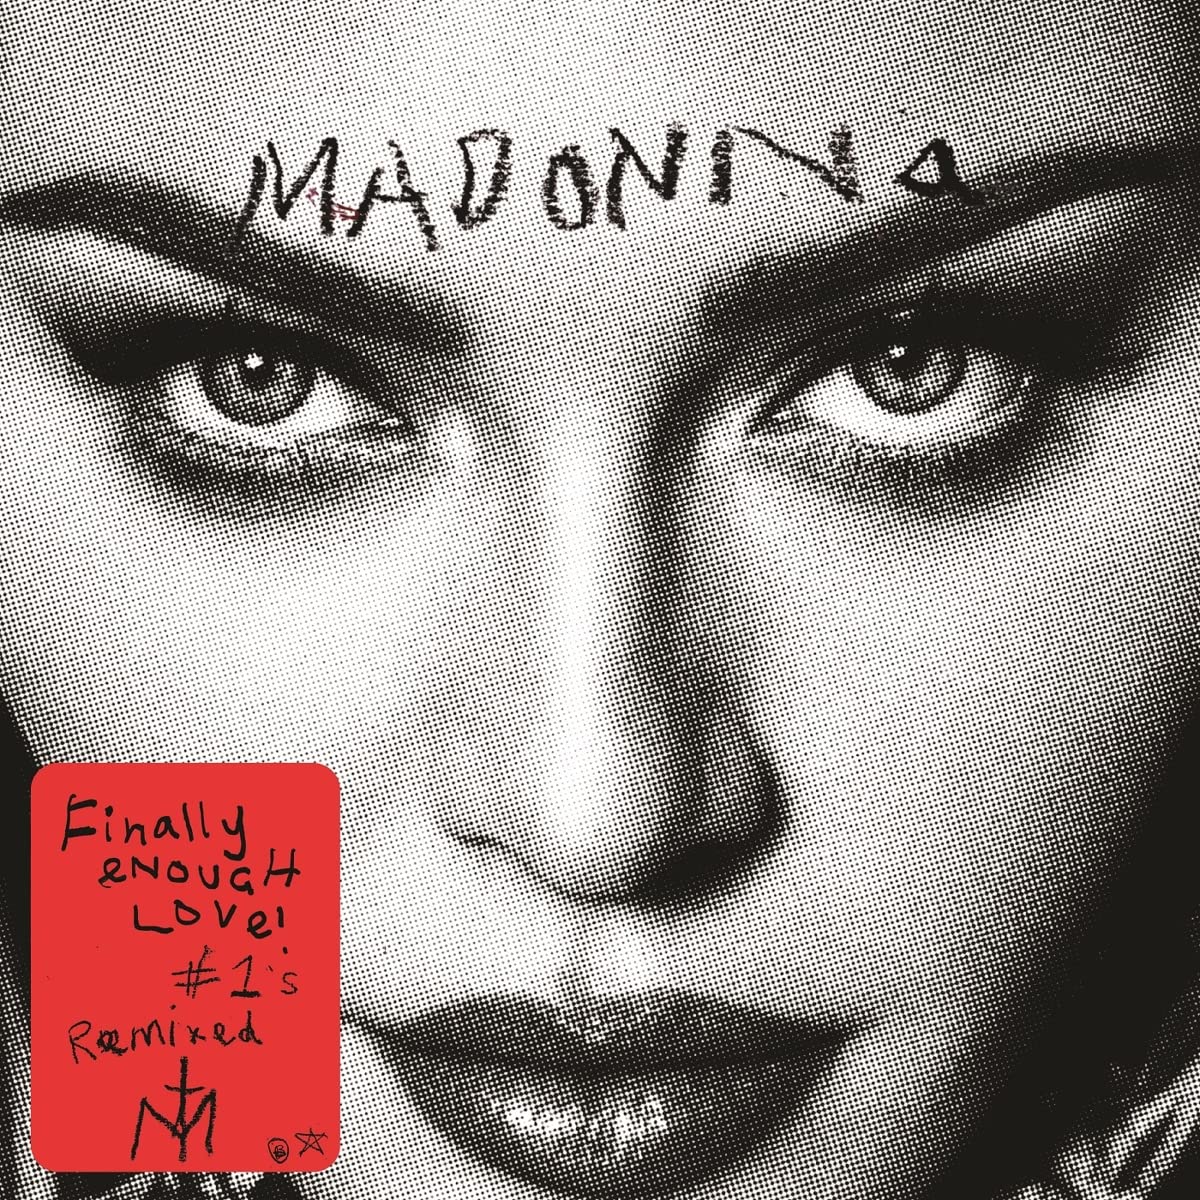 Madonna "Finally Enough Love" Black 2LP